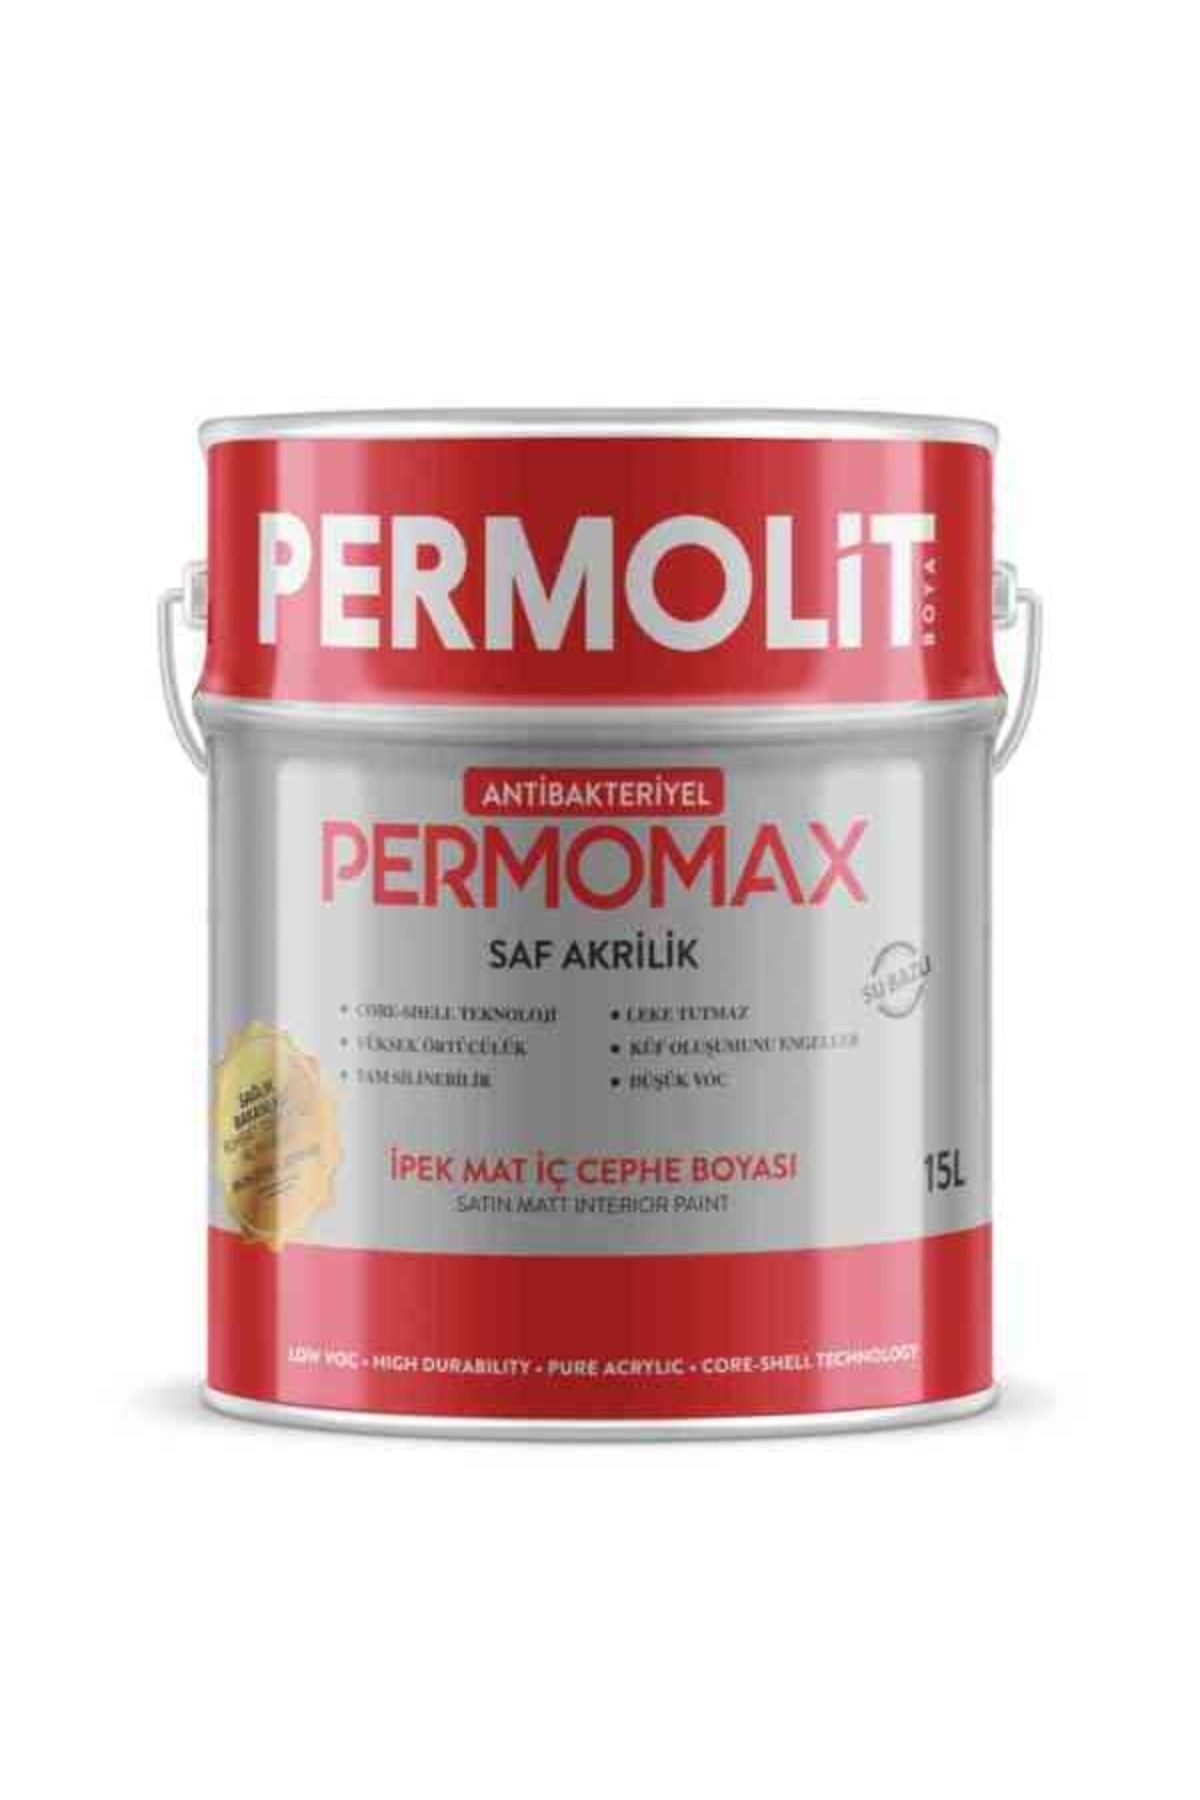 Permolit Permomax Antibakteriyel Ipek Mat Iç Cephe Boyası 3,5kg - Beyaz